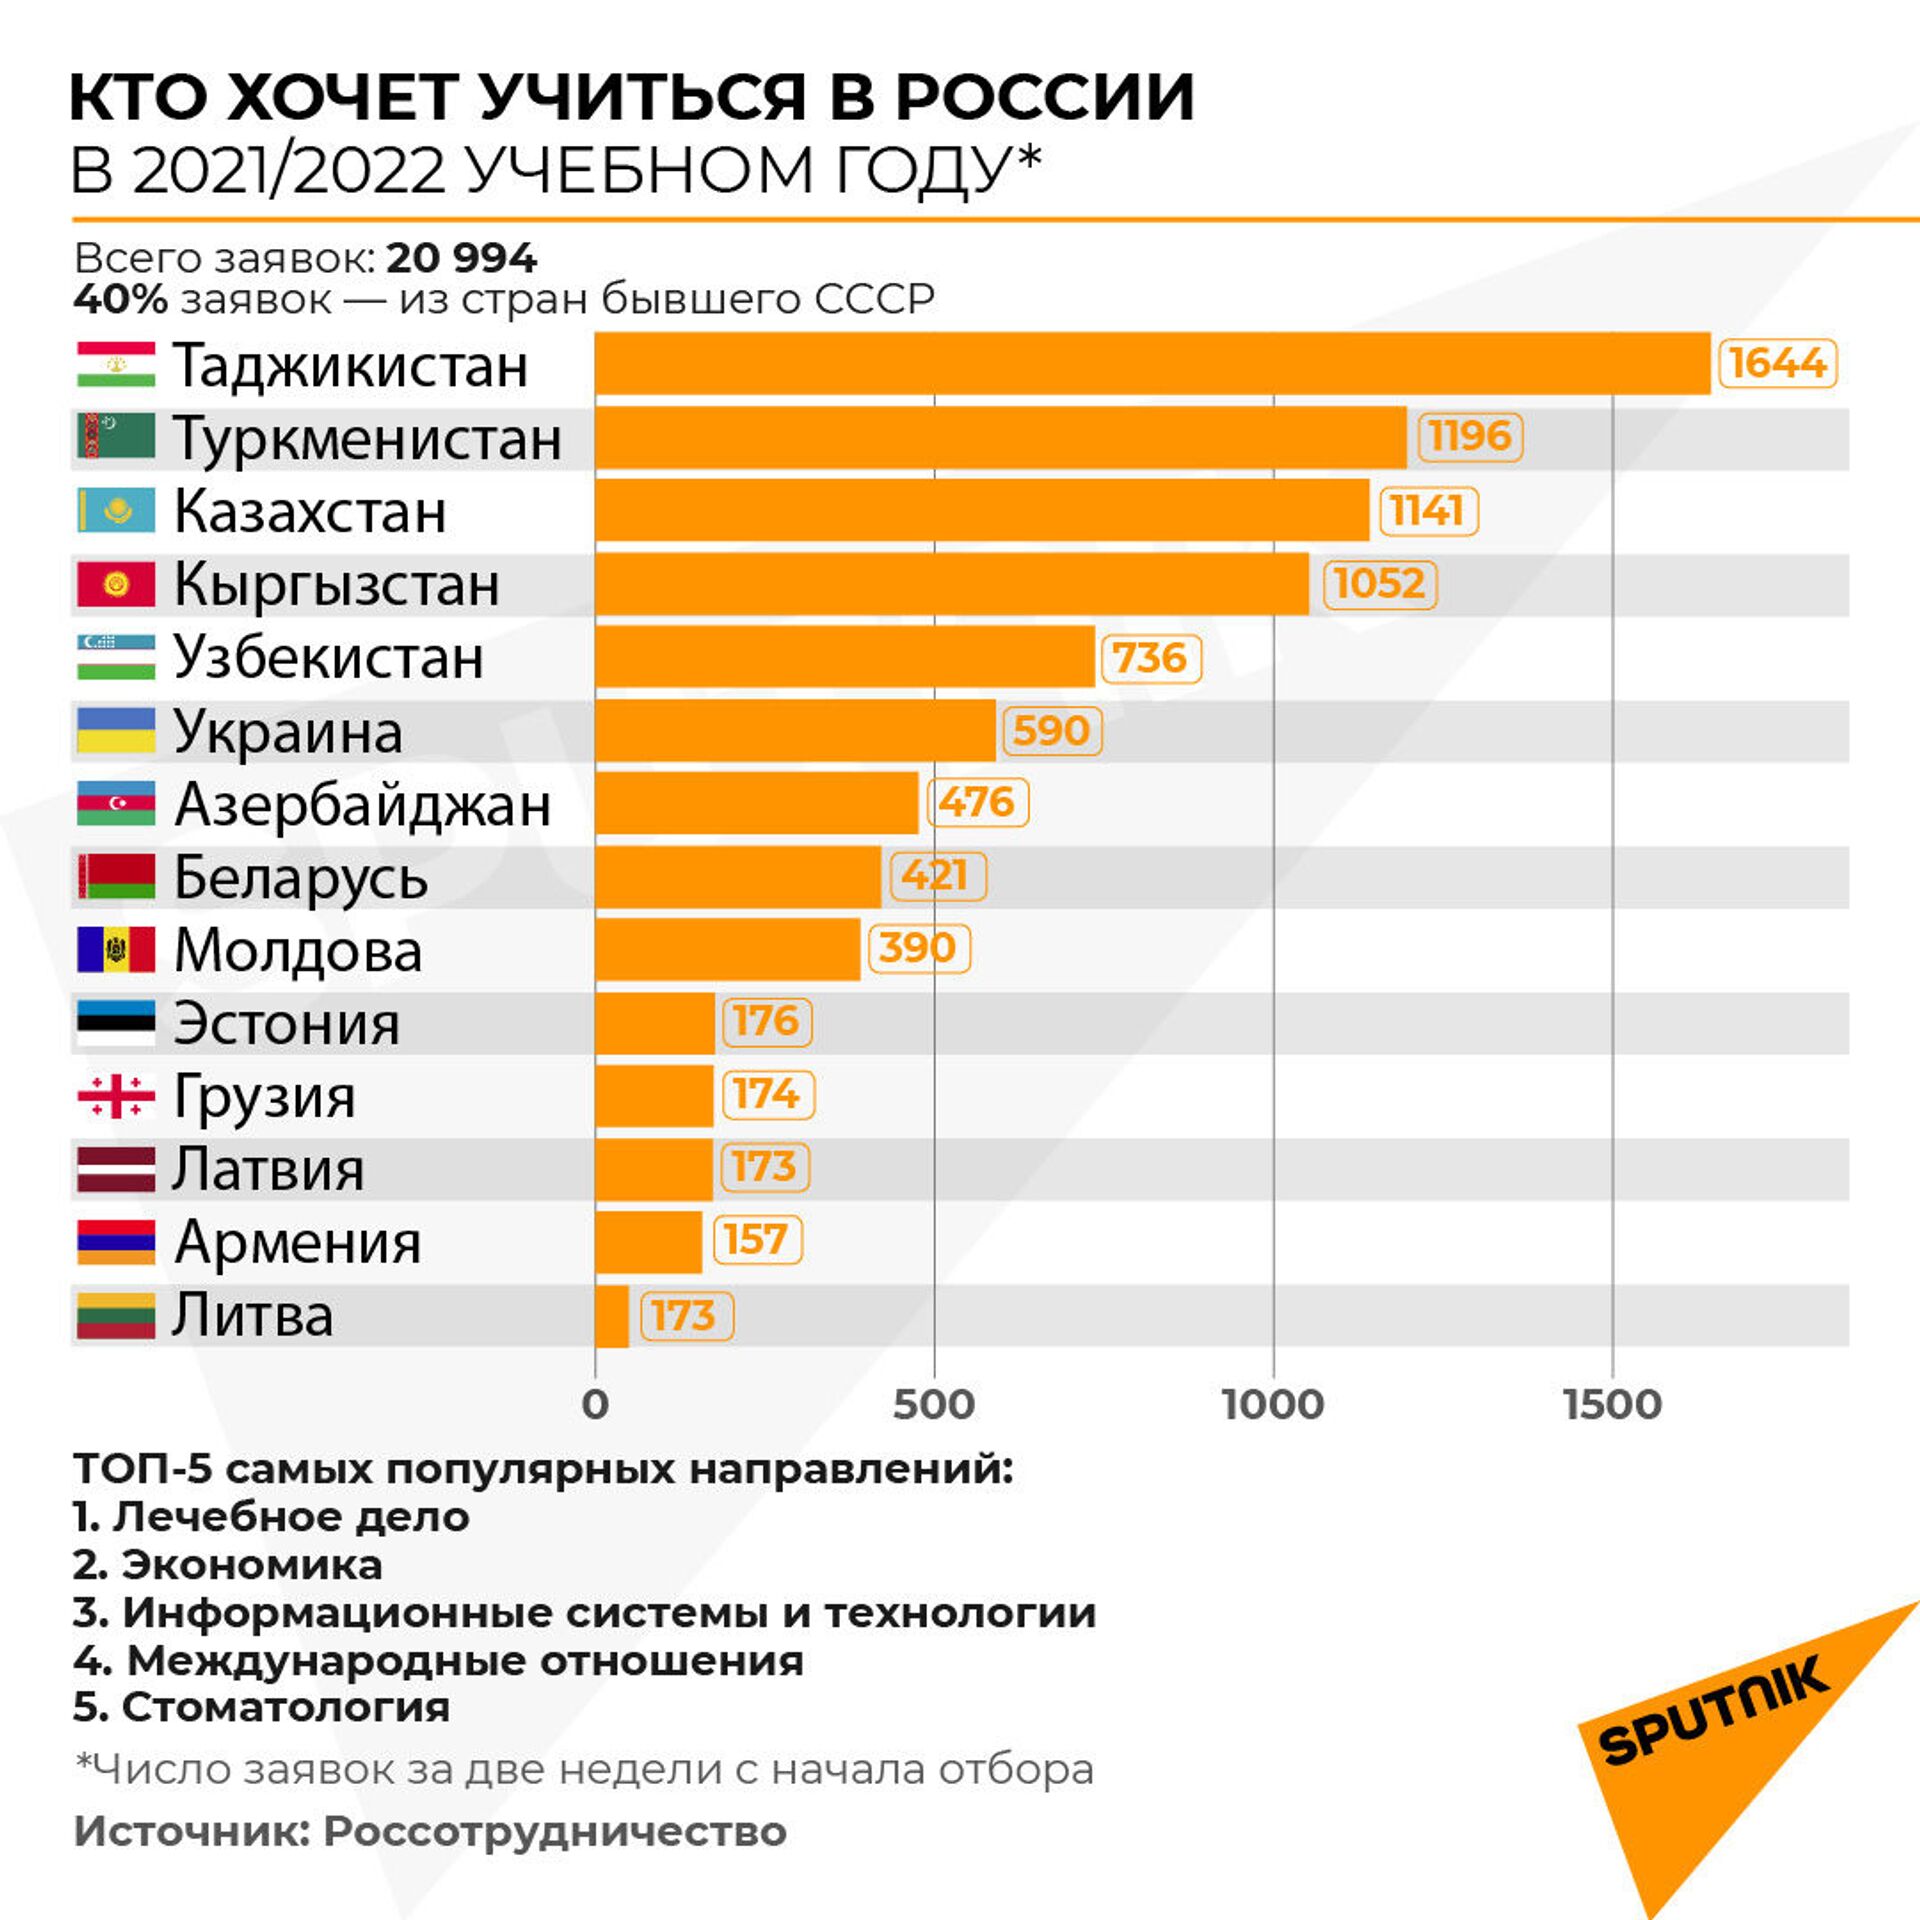 Кто хочет учиться в России в 2021-2022 году - Sputnik Таджикистан, 1920, 06.04.2021